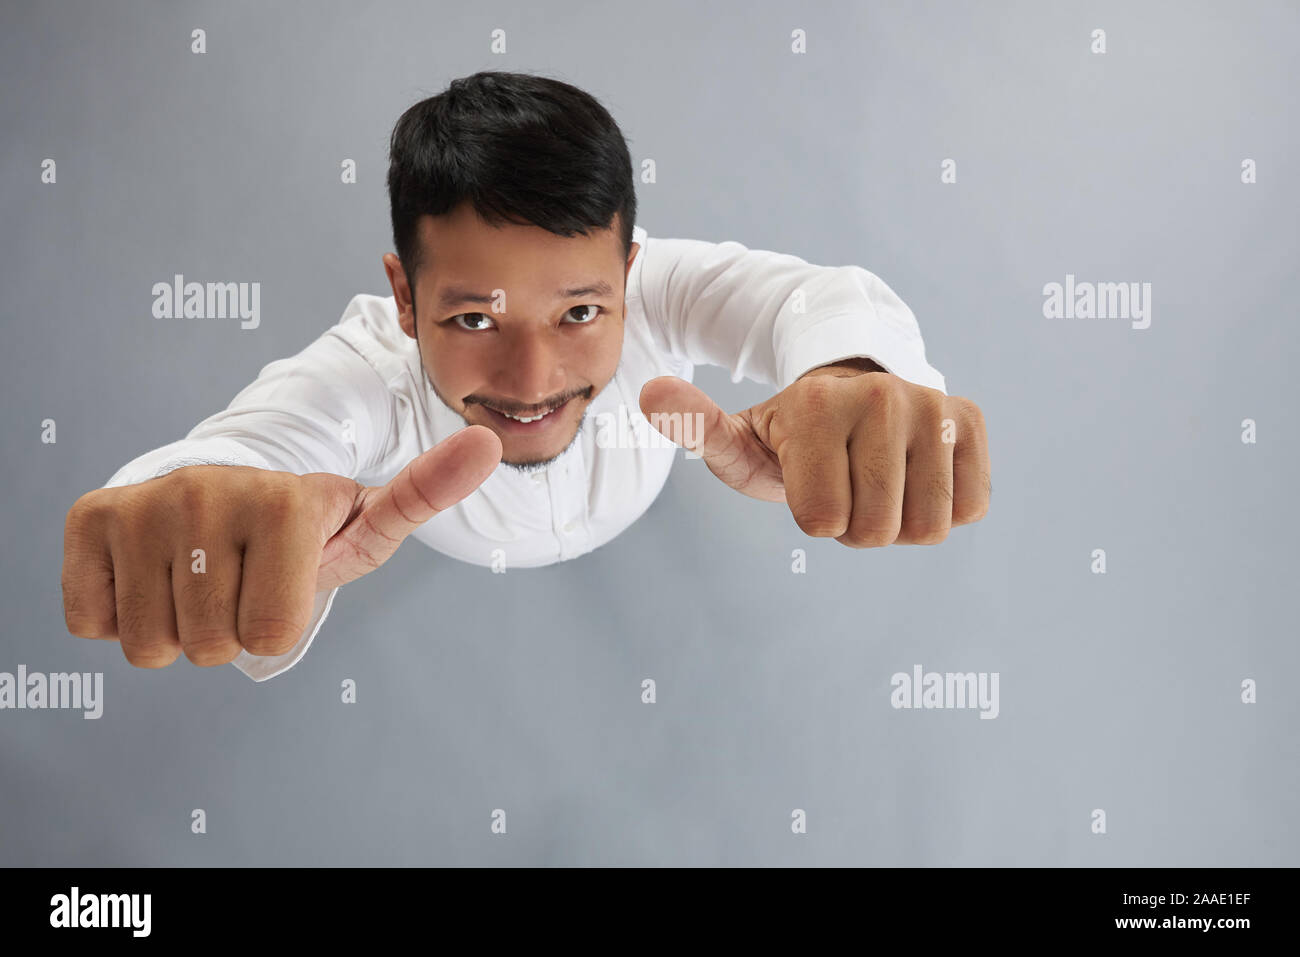 Junge asiatischer Mann zeigen Daumen oben Draufsicht auf Grau studio Hintergrund Stockfoto